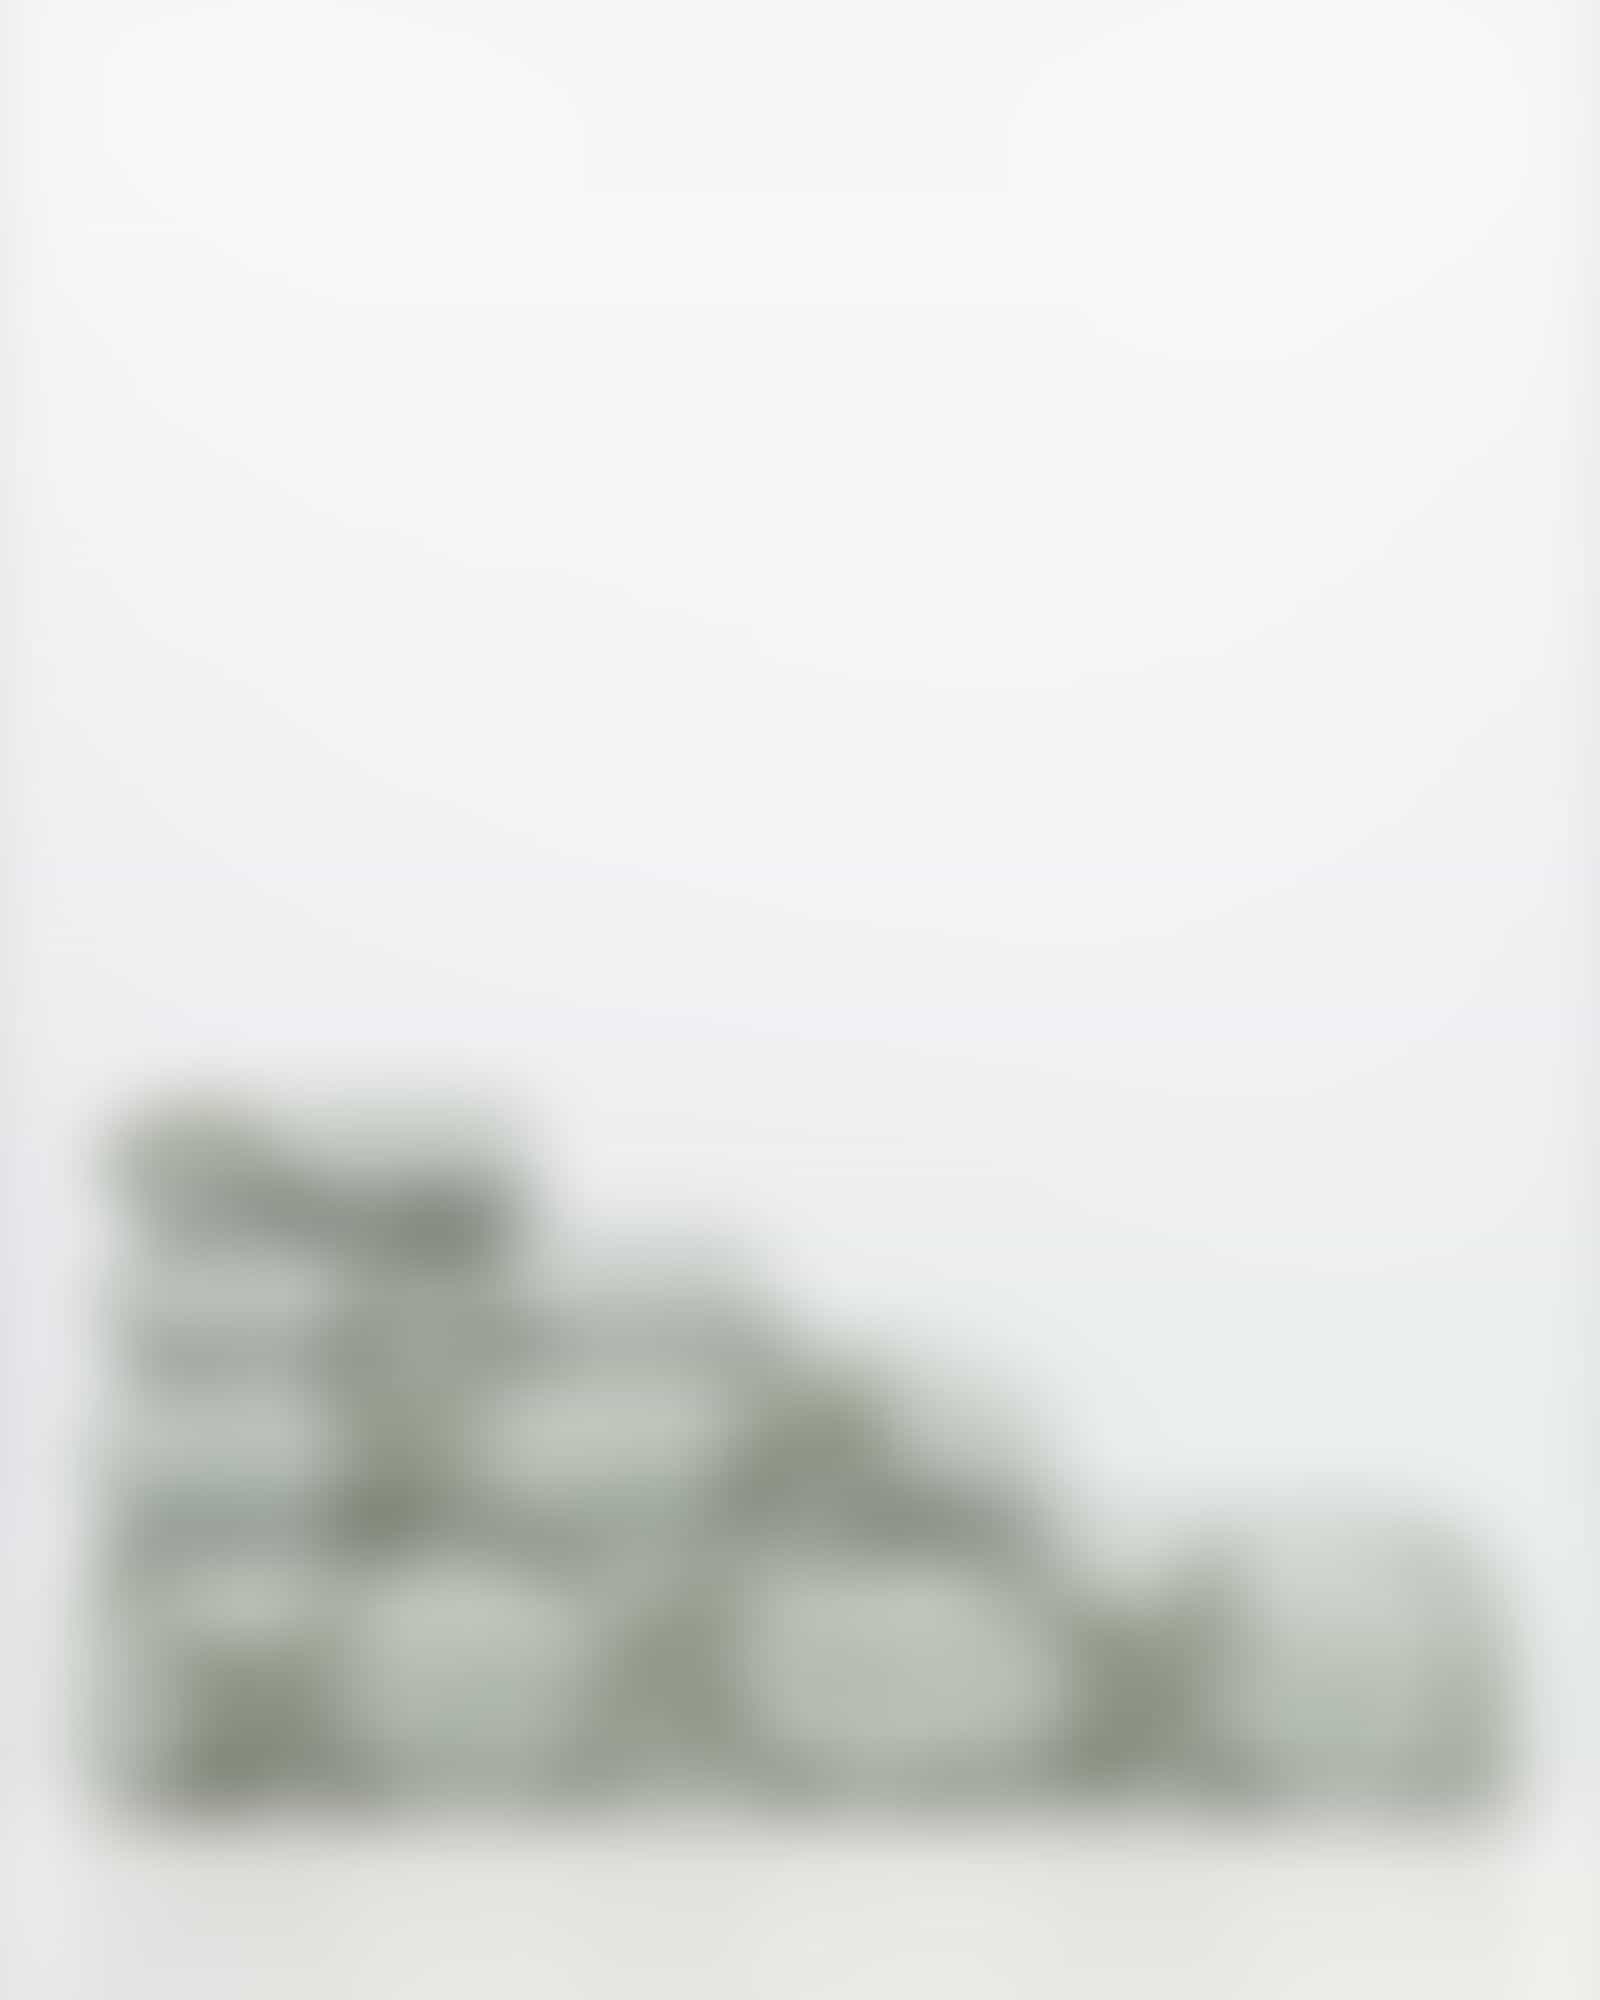 JOOP! Classic - Cornflower 1611 - Farbe: Salbei - 47 - Handtuch 50x100 cm Detailbild 3